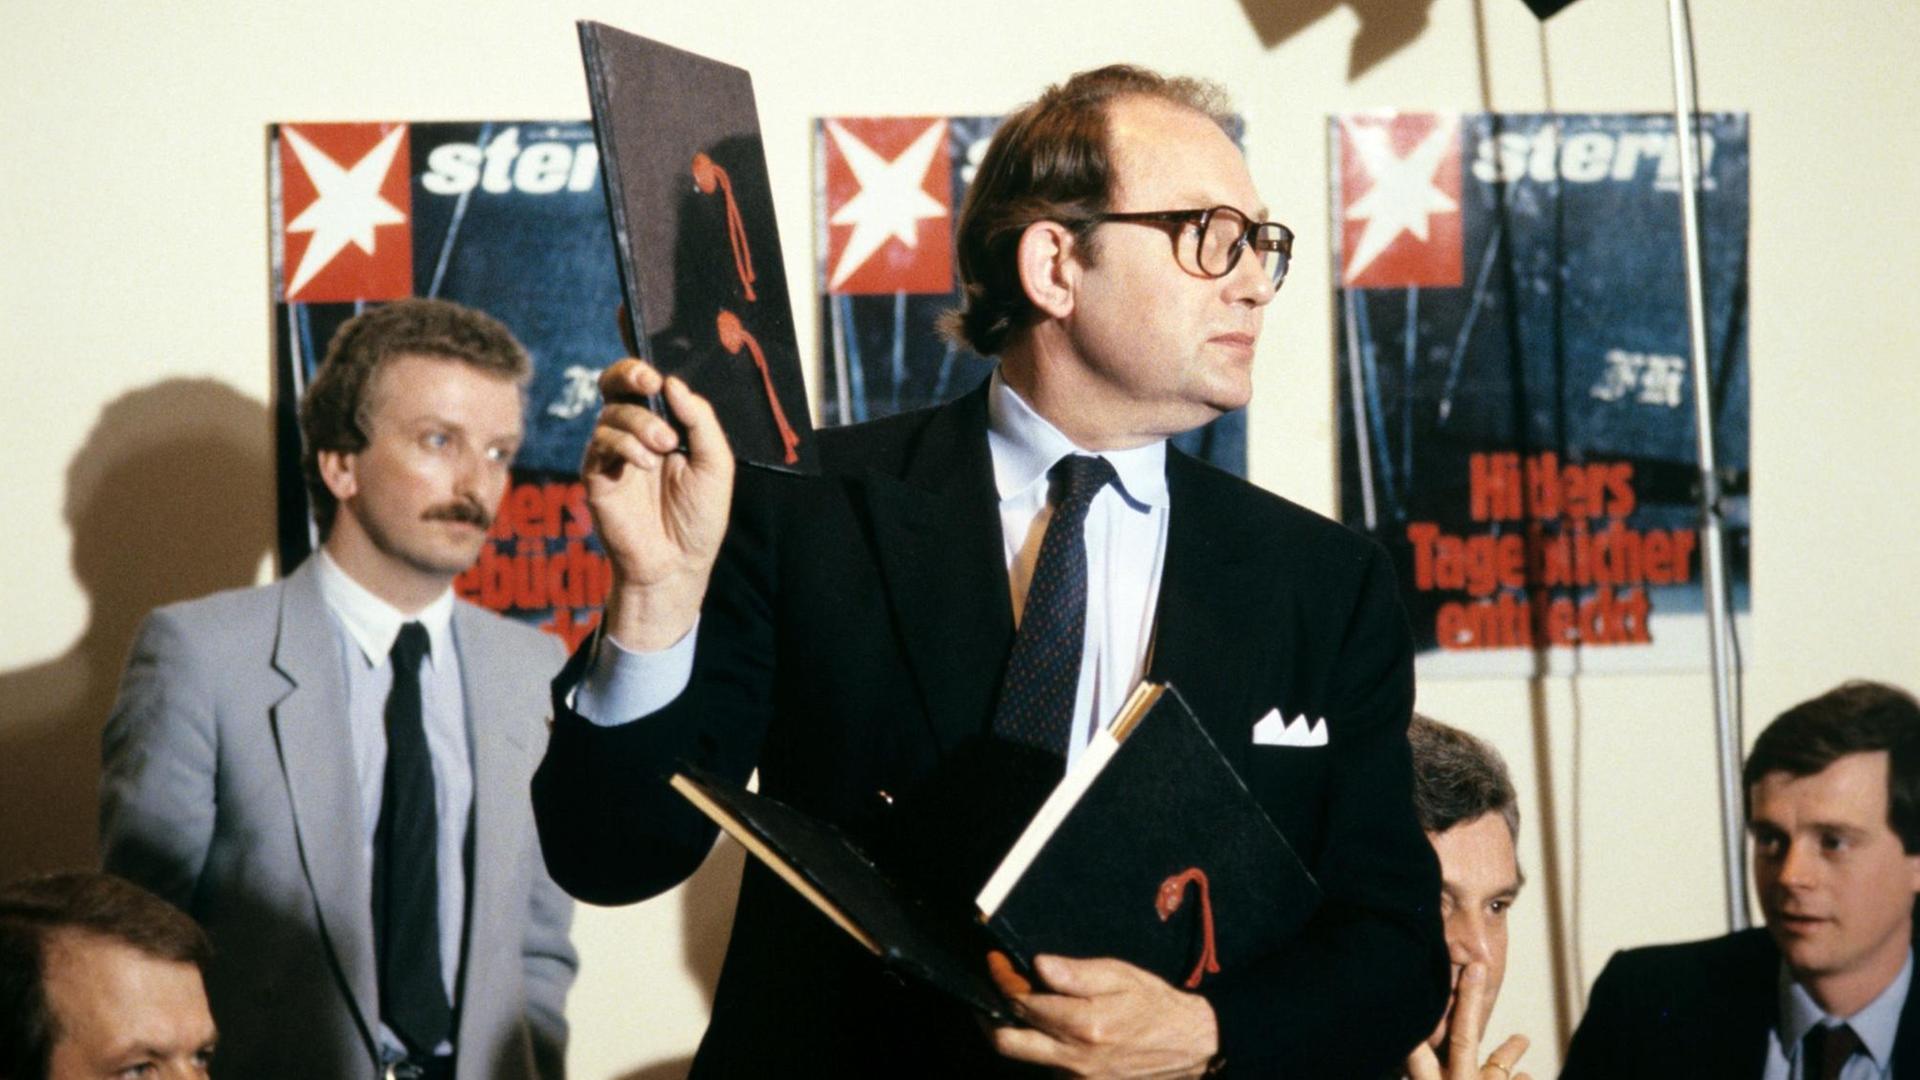 Der Journalist Gerd Heidemann hält bei einer Pressekonferenz im April 1983 ein Exemplar der angeblichen "Hitler-Tagebücher" hoch. Im Hintergrund hängen Titelbilder der "Stern"-Ausgabe zu der Veröffentlichung.